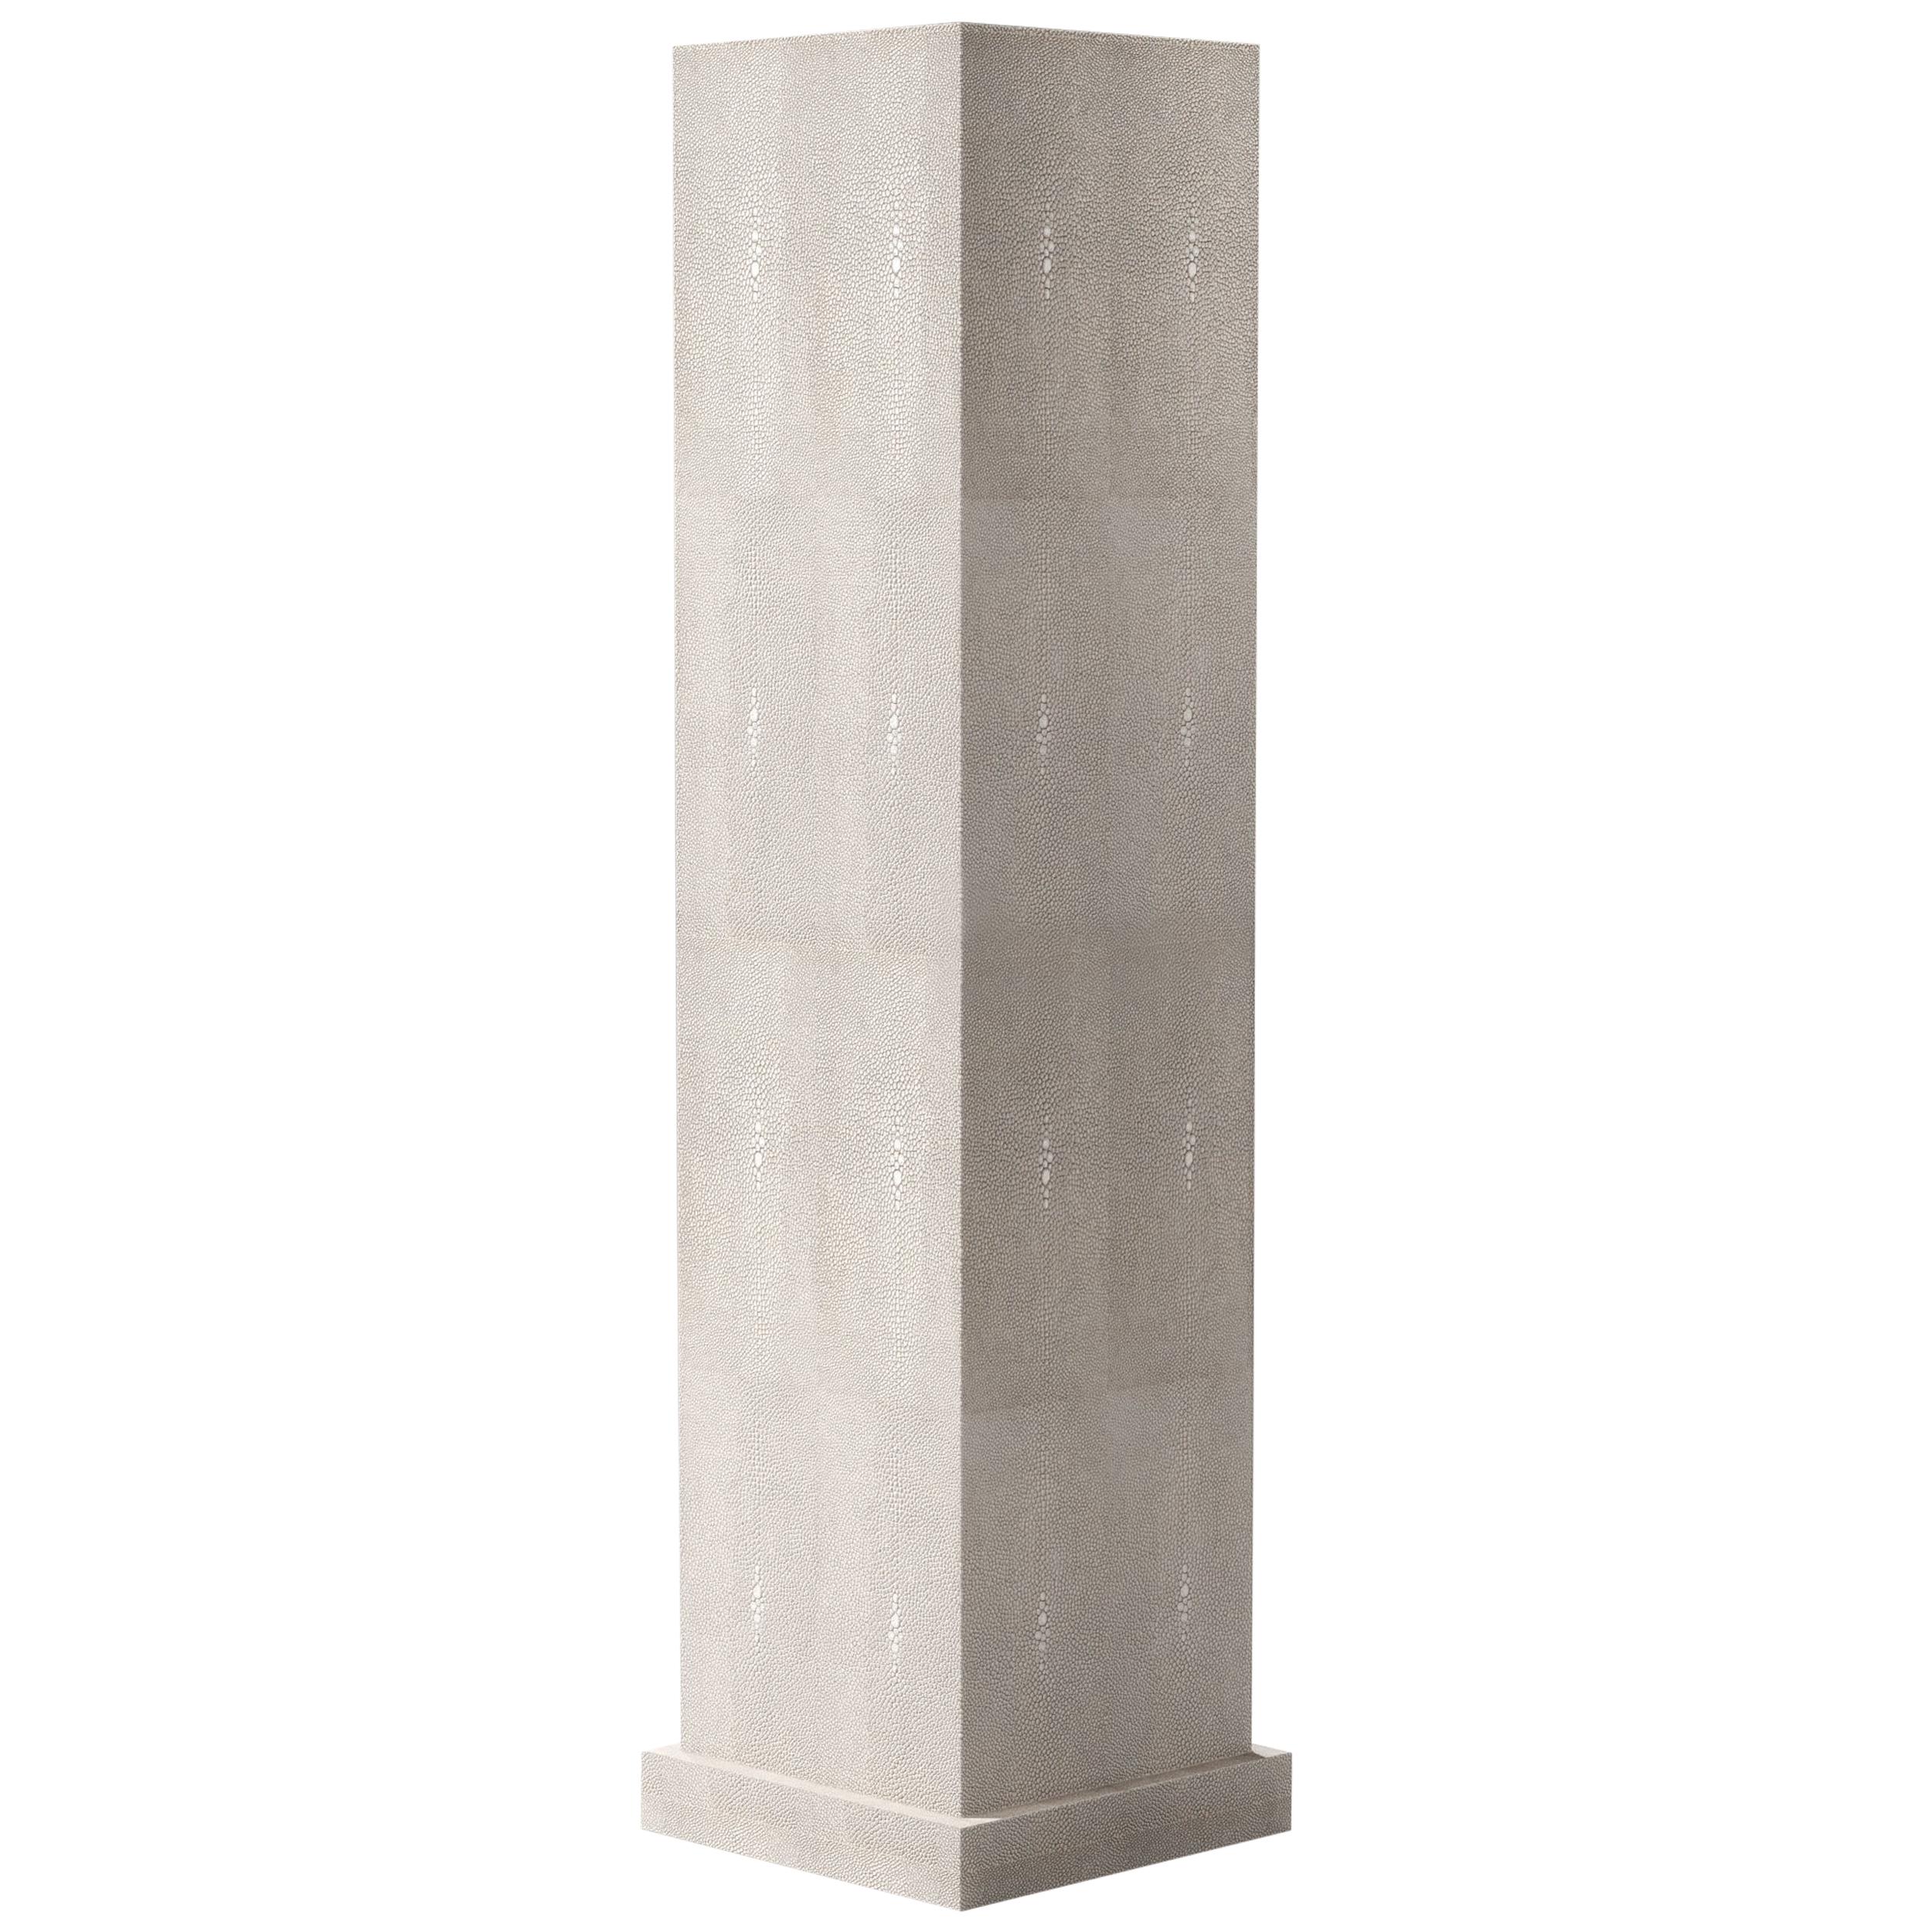 Nouveautés et articles sur mesure Pedestals and Columns